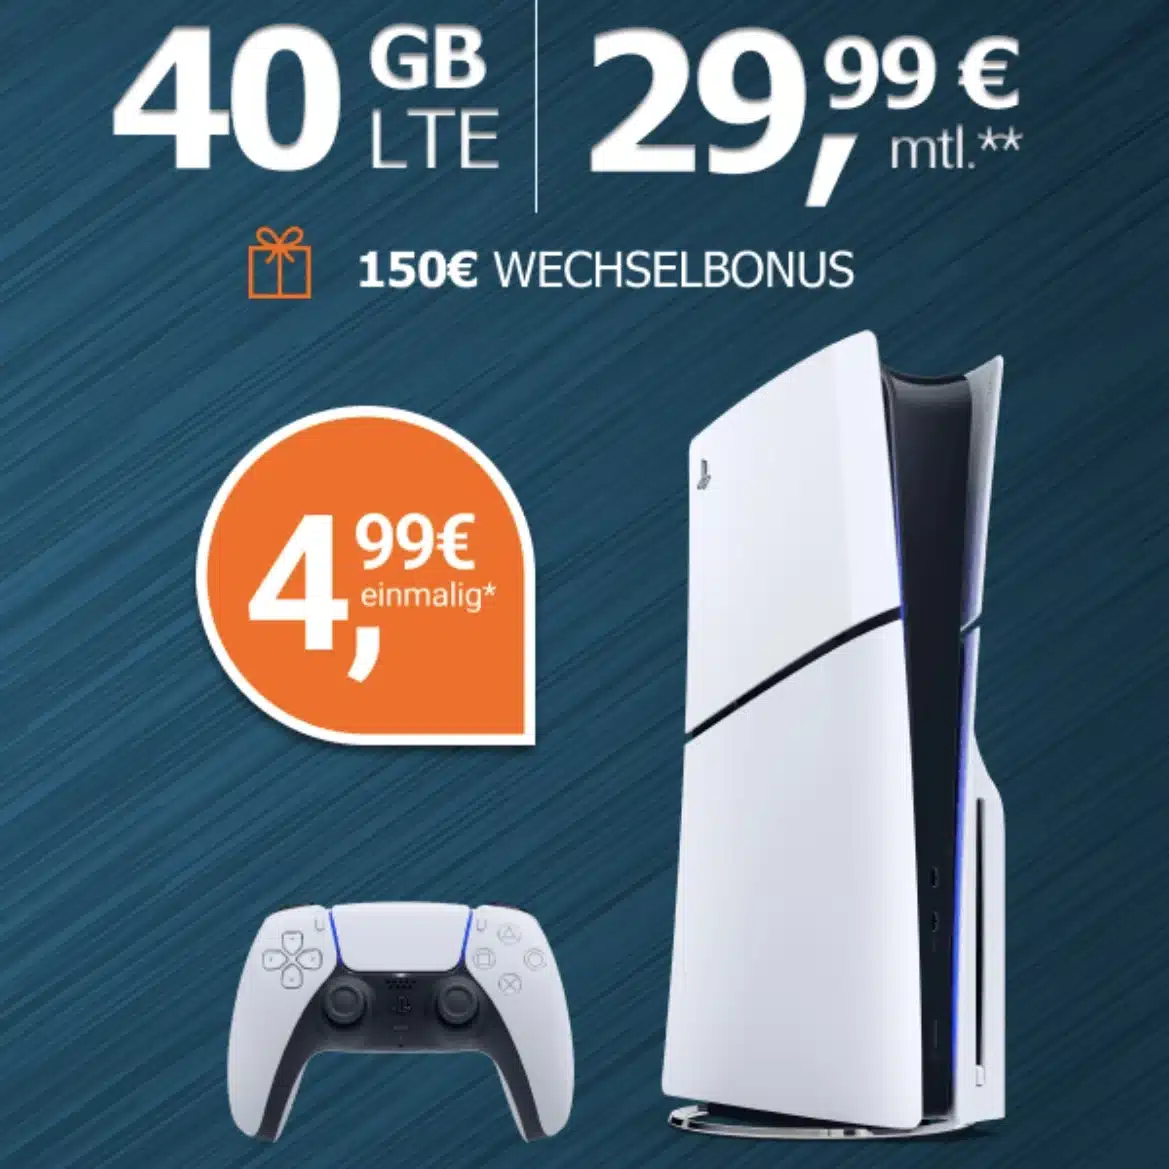 Playstation 5 Slim + 40 GB Datenvolumen für 29,99€ mtl. | Telekom-Netz | Allnet-Flat | 150€ Wechselbonus